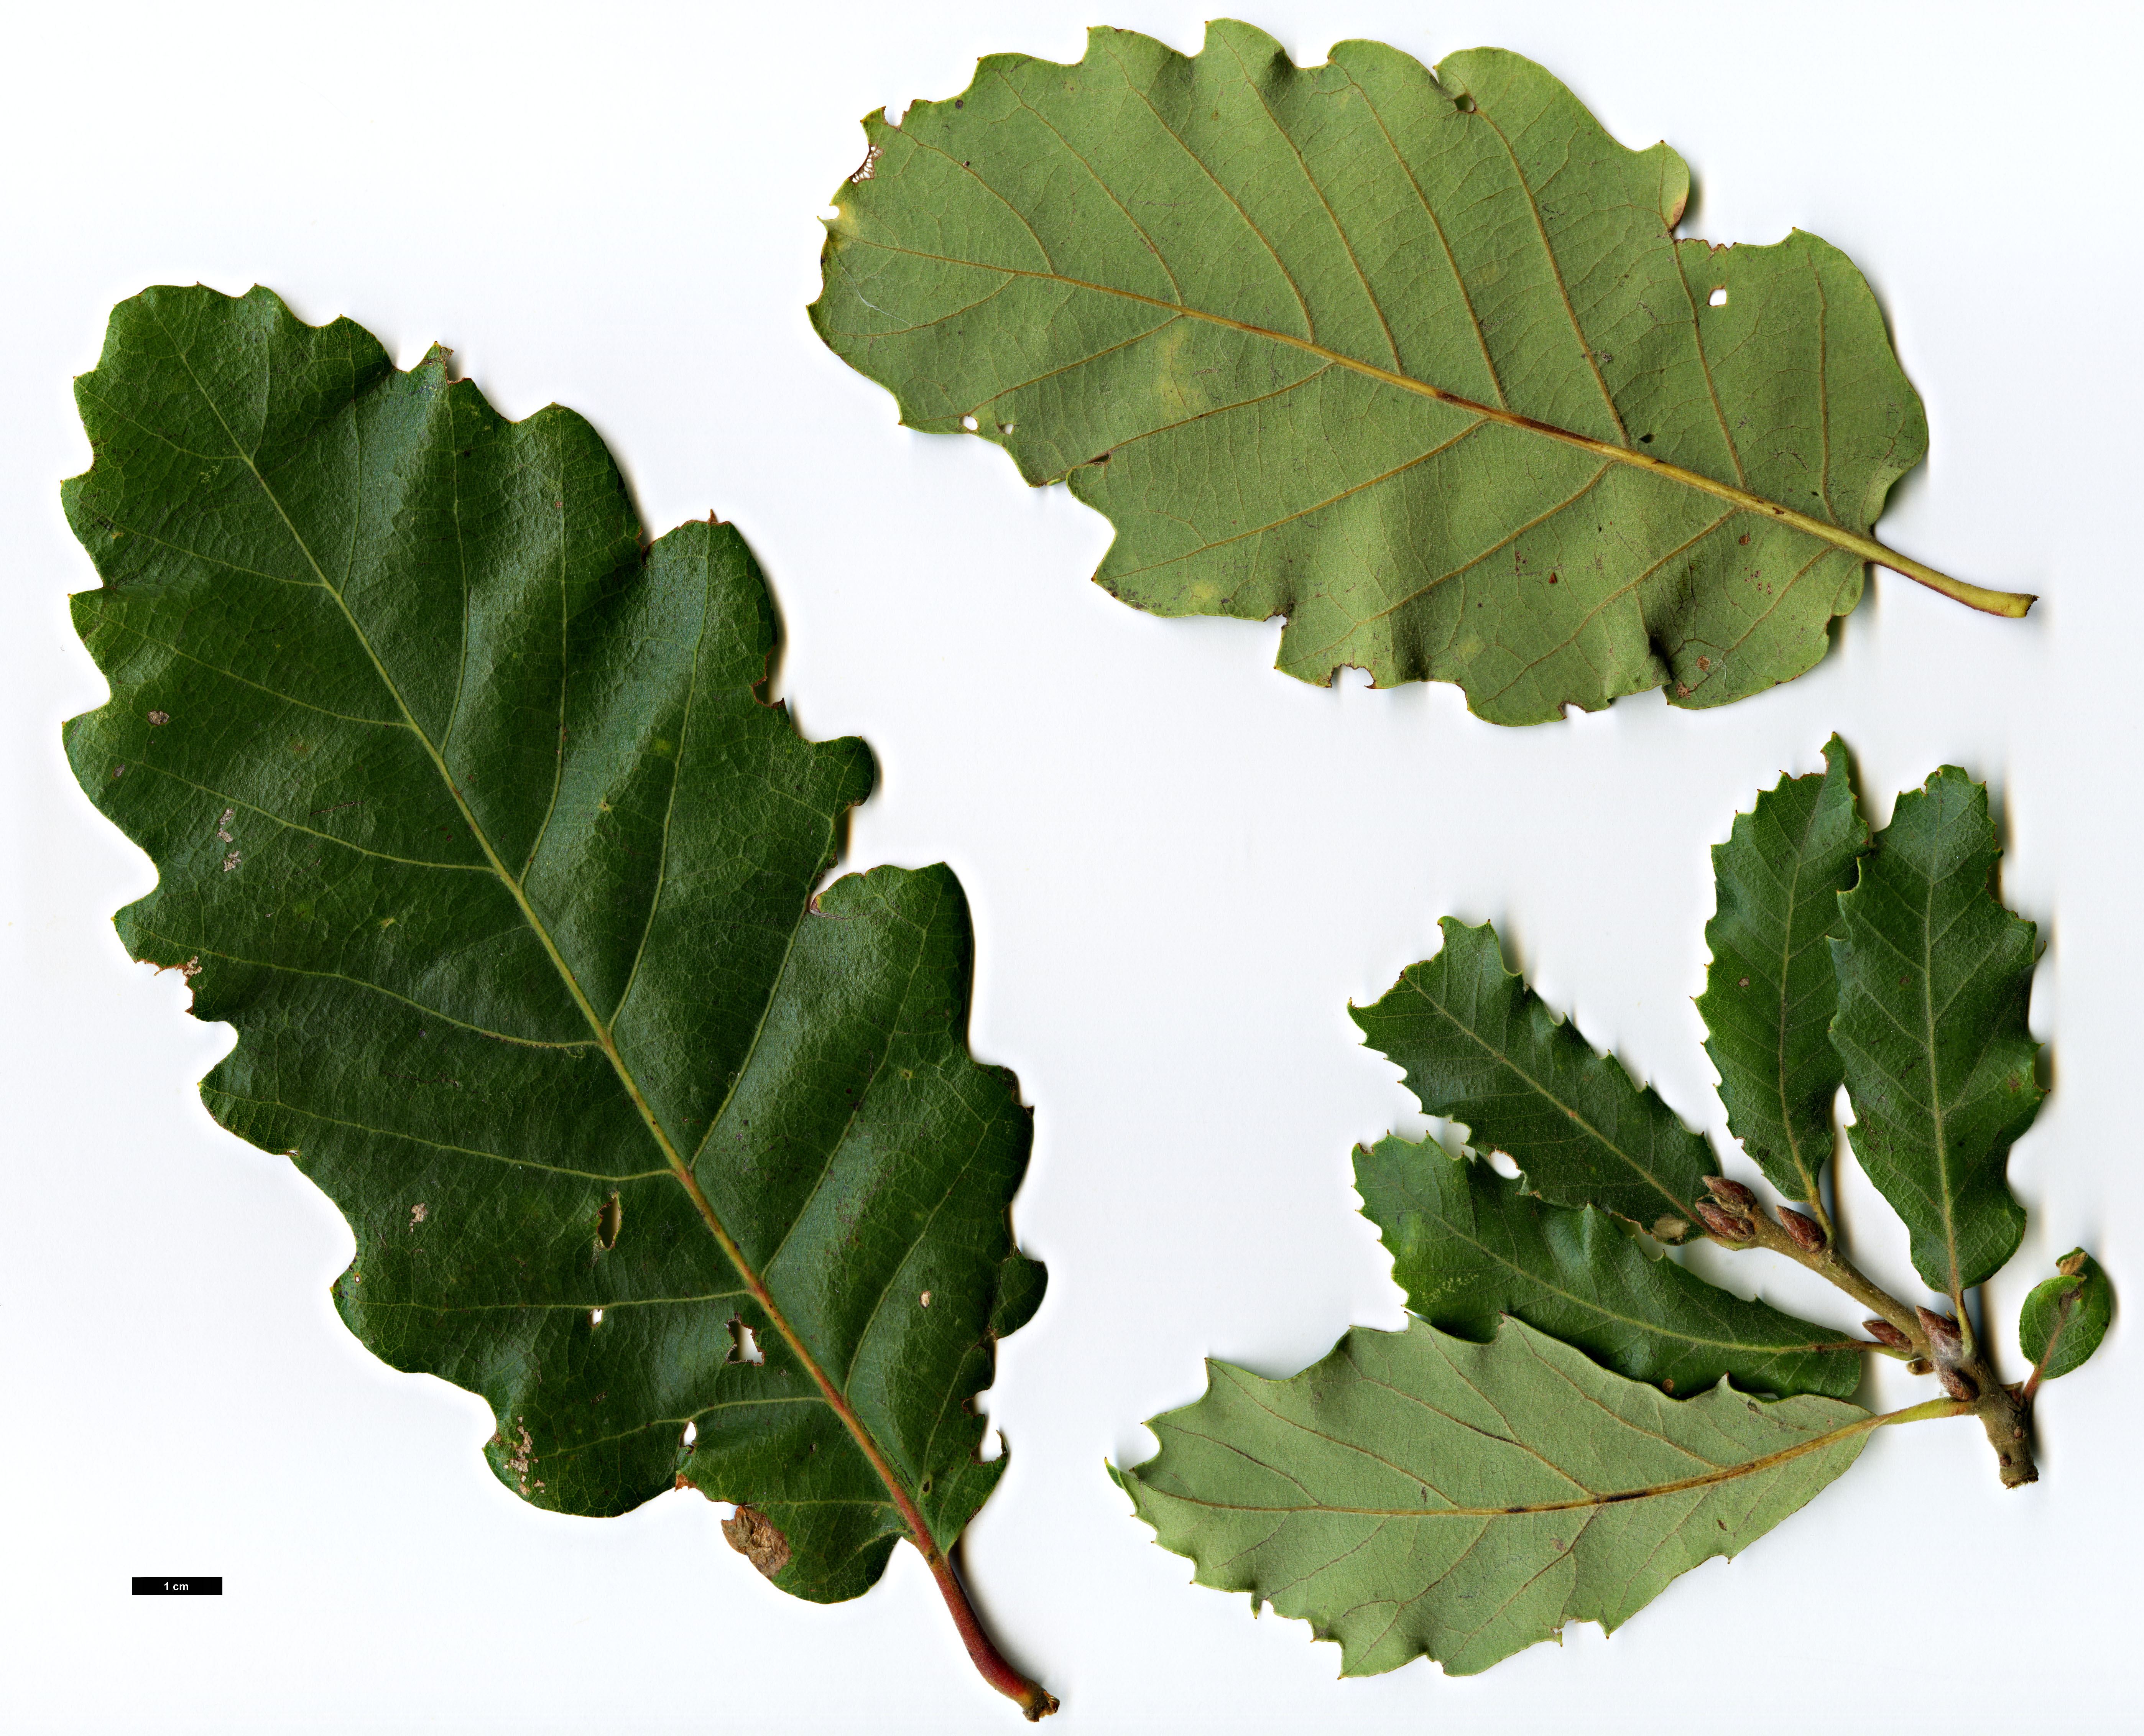 High resolution image: Family: Fagaceae - Genus: Quercus - Taxon: alentejana × Q.robur subsp. estremadurensis